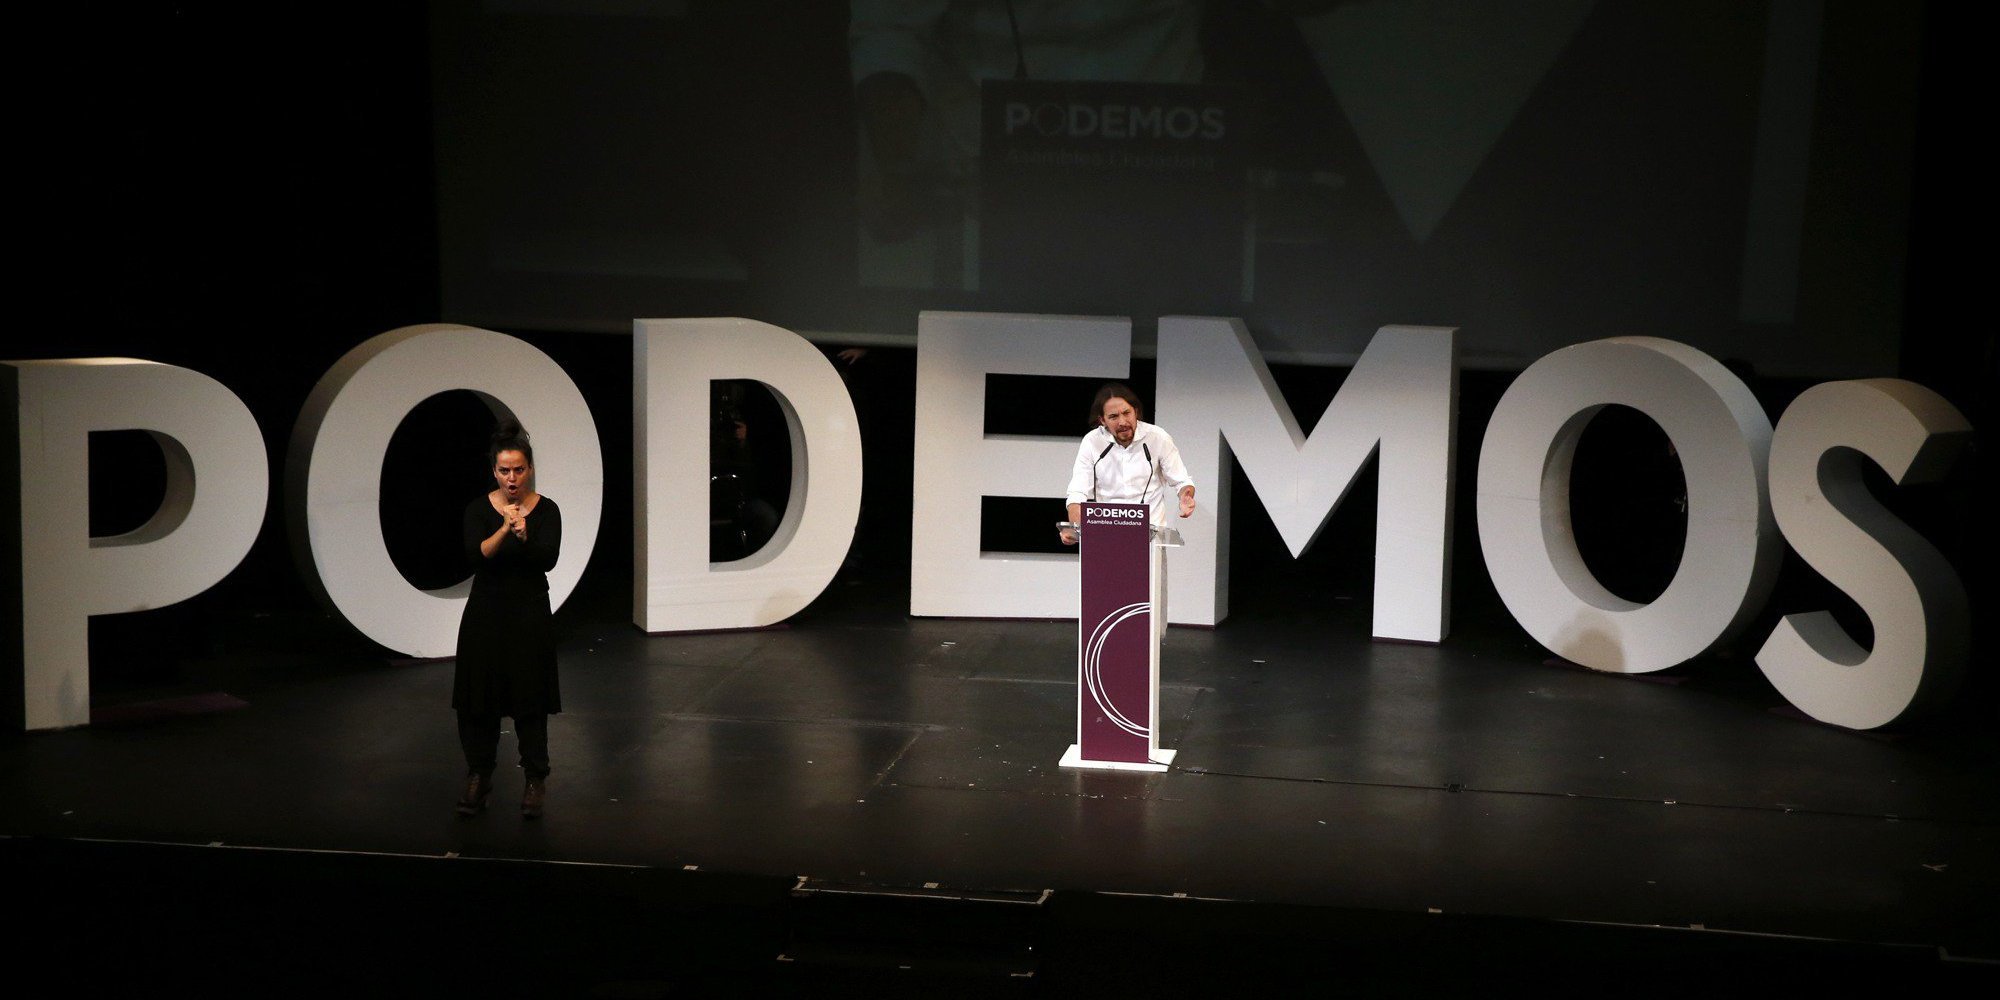 Πρωτιά στις δημοσκοπήσεις για τους Podemos